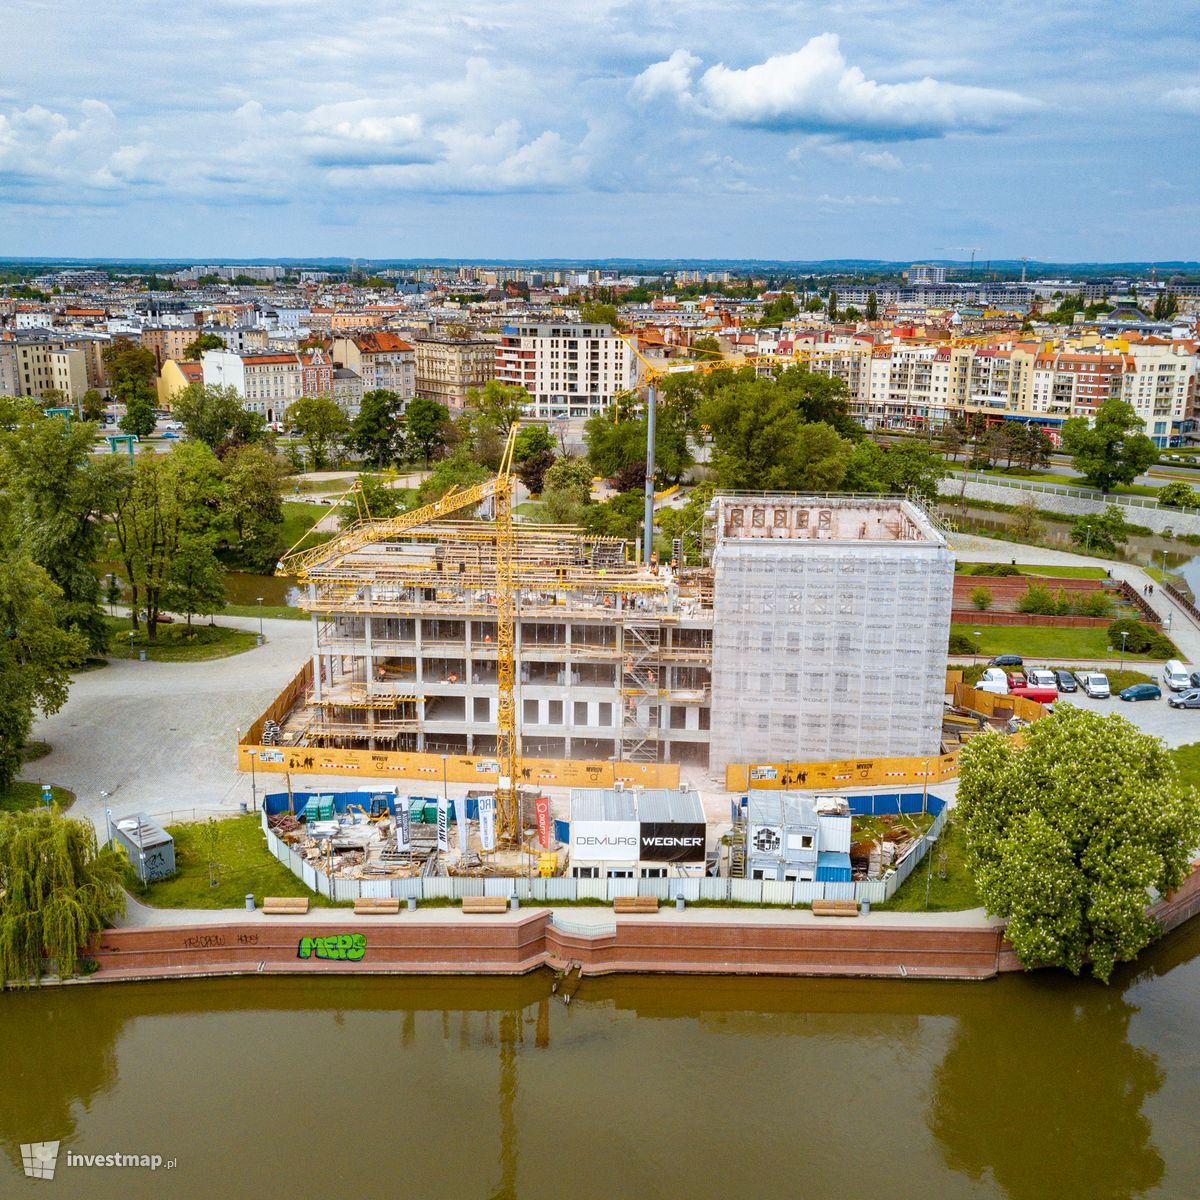 Zdjęcie [Wrocław] Concordia Hub (kamienica na Wyspie Słodowej 7/7a) fot. Jakub Zazula 